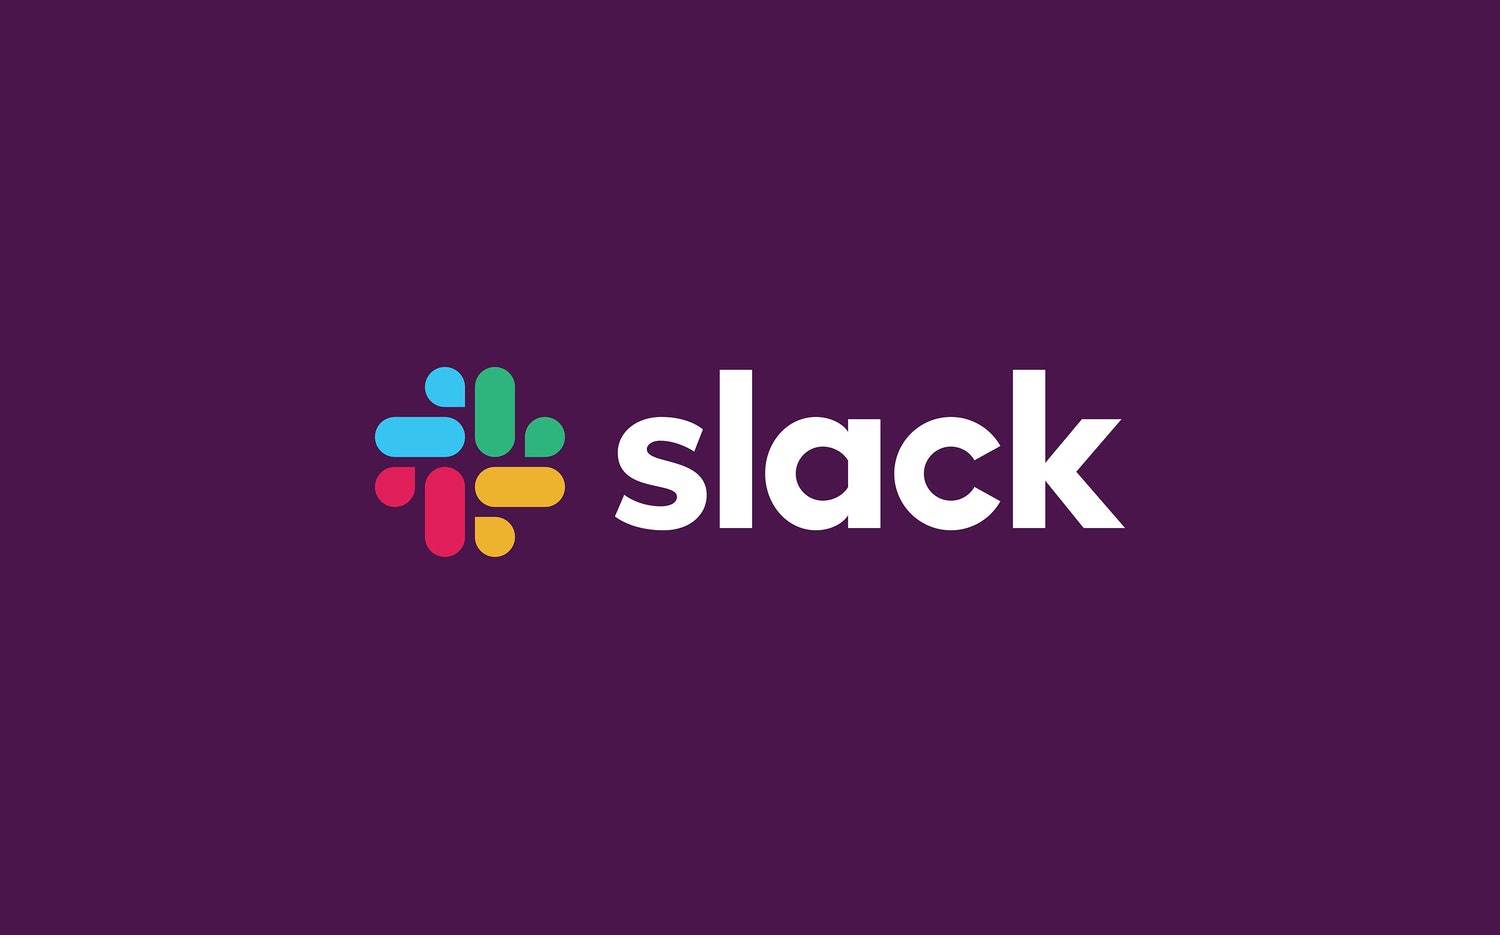 チームコミュニケーションツール Slack 設立以来初めてブランドアイデンティティを変更 Webマガジン Axis デザインのwebメディア